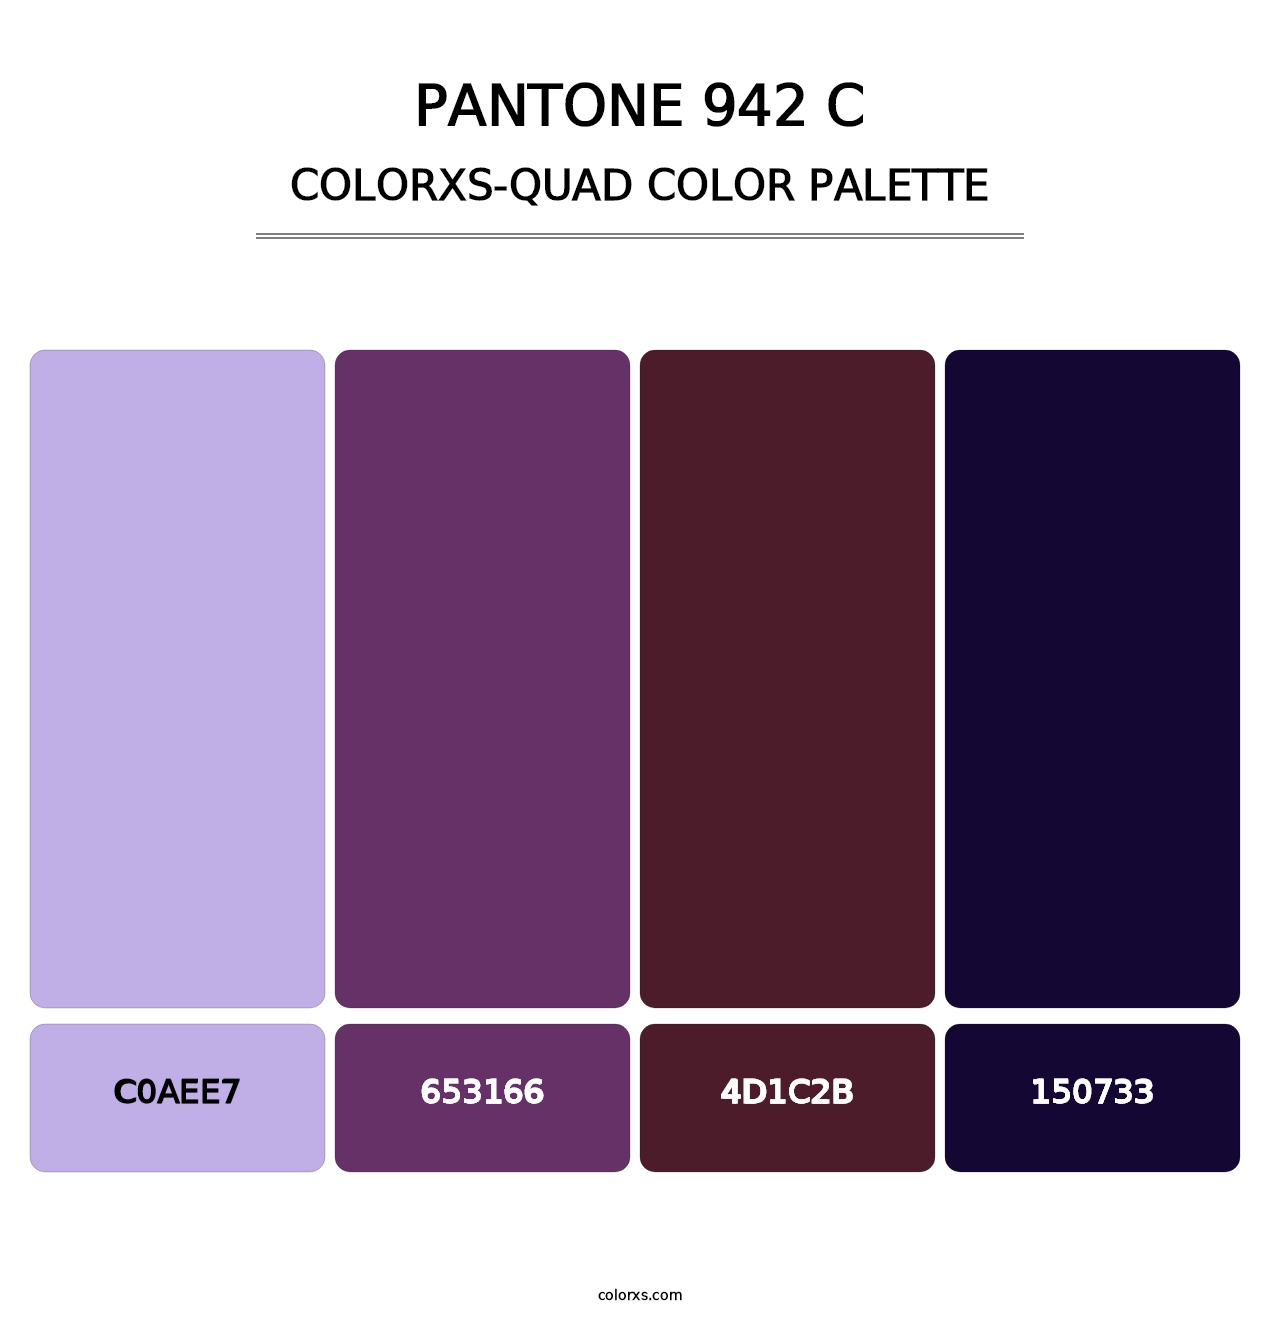 PANTONE 942 C - Colorxs Quad Palette